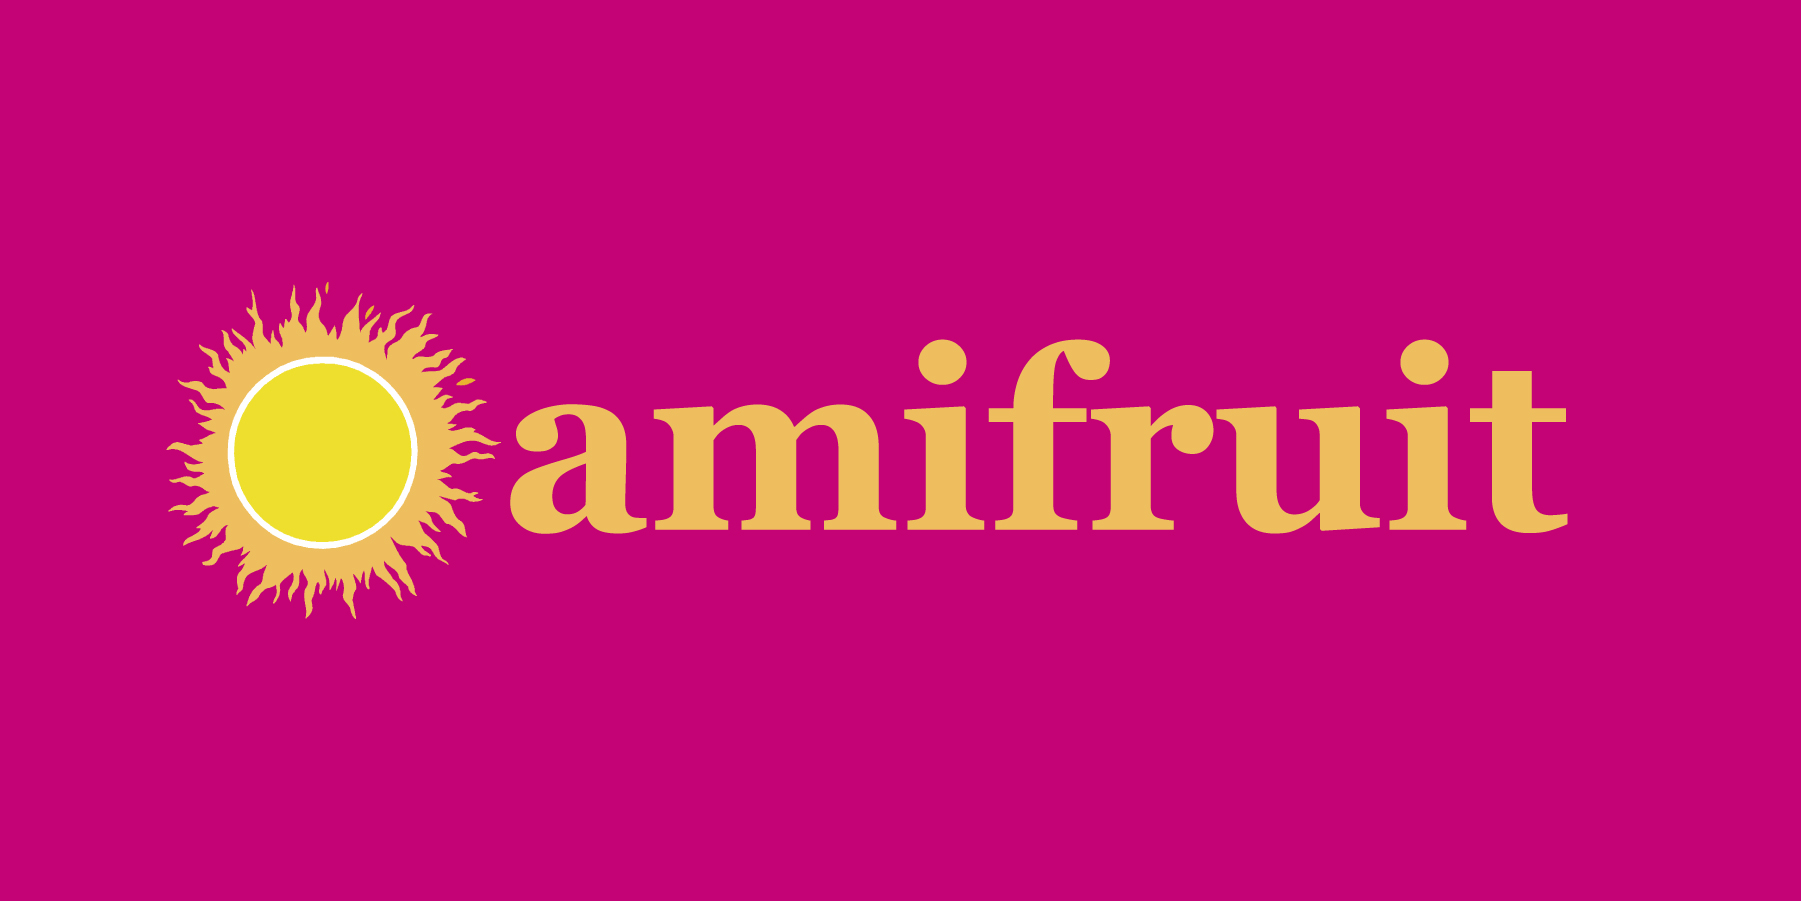 Amifruit